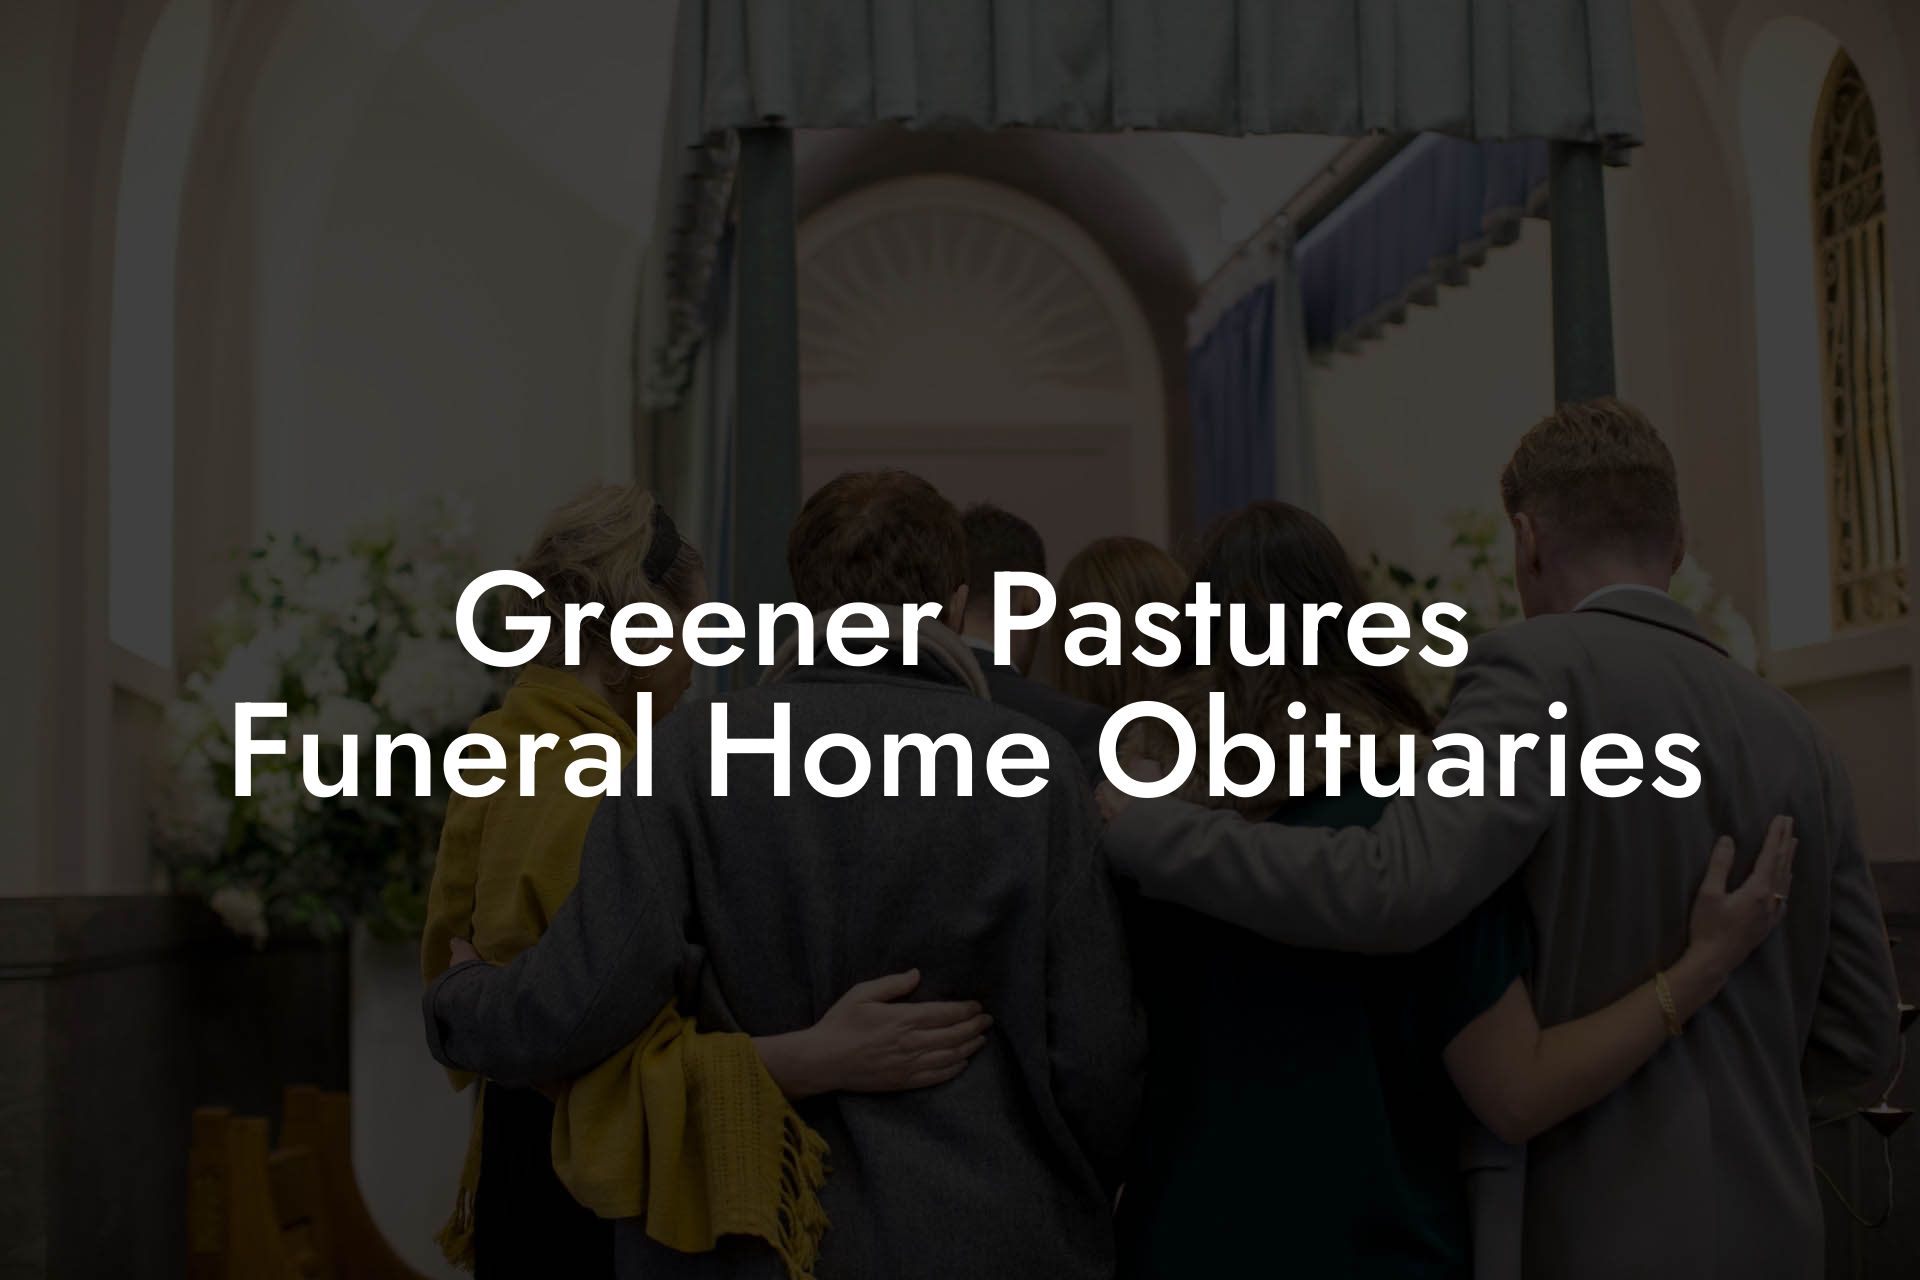 Greener Pastures Funeral Home Obituaries